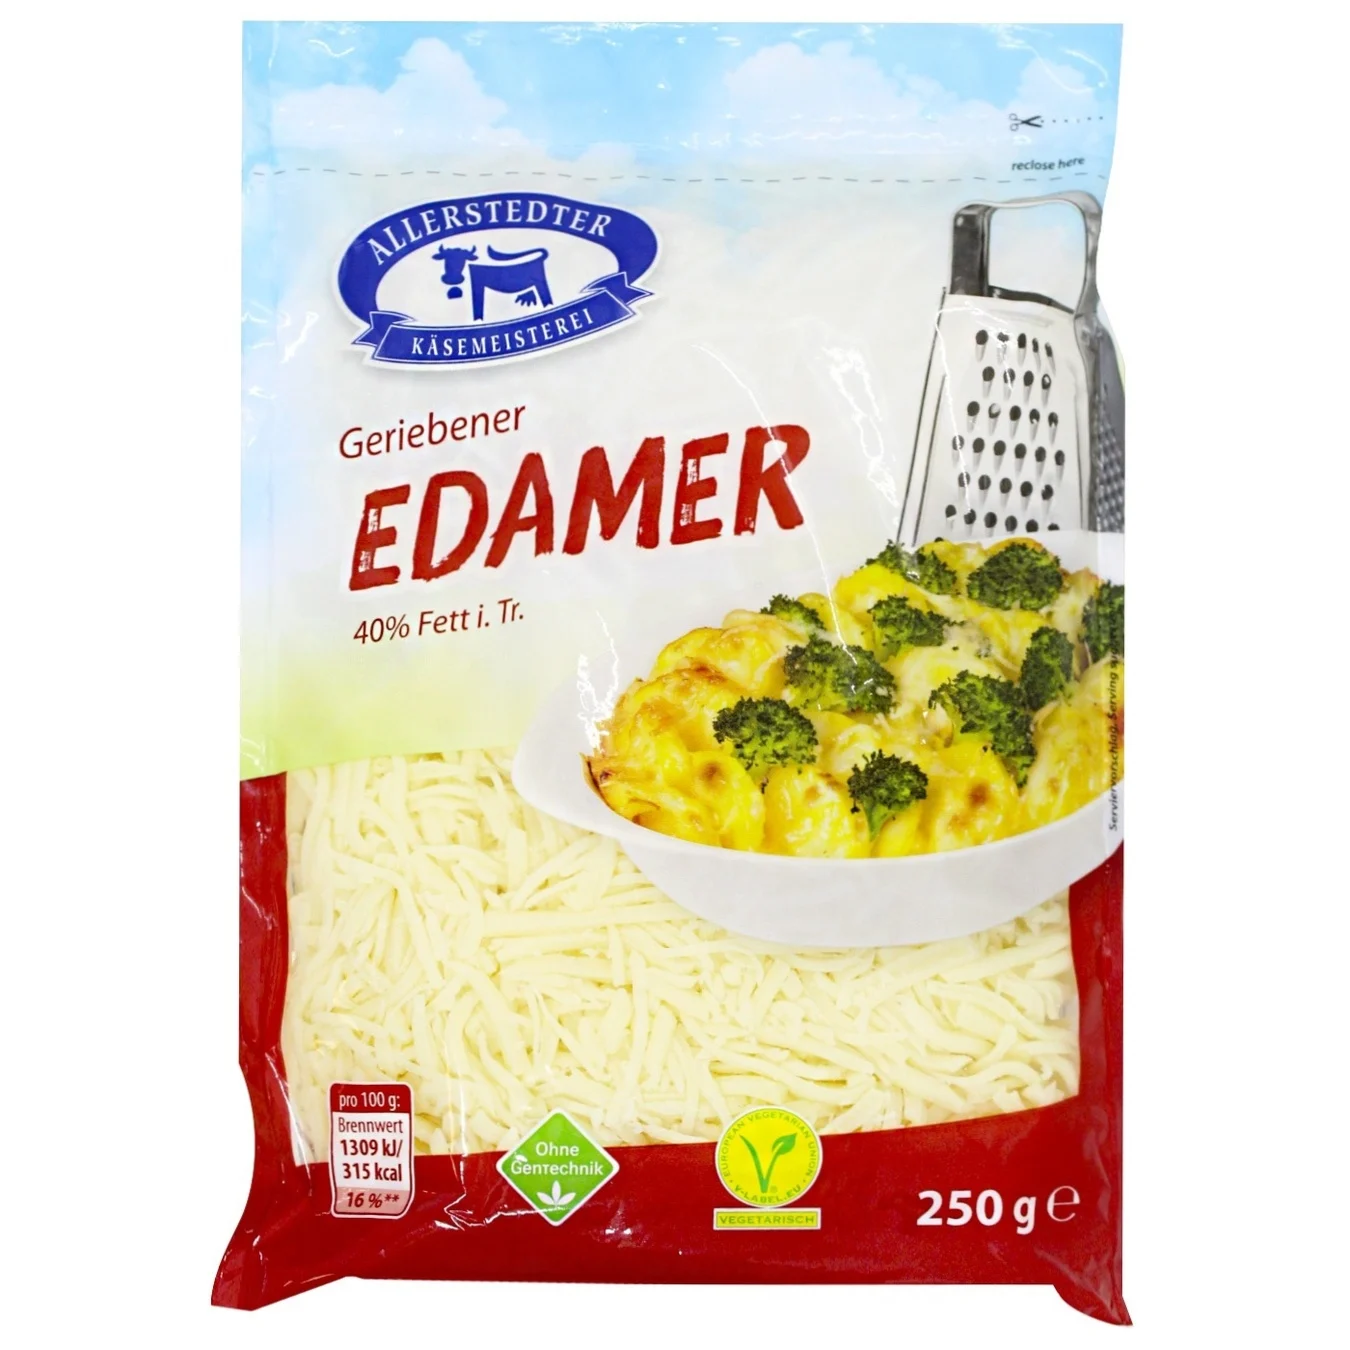 Allerstedter Käserei grated Edam cheese 40% 250g